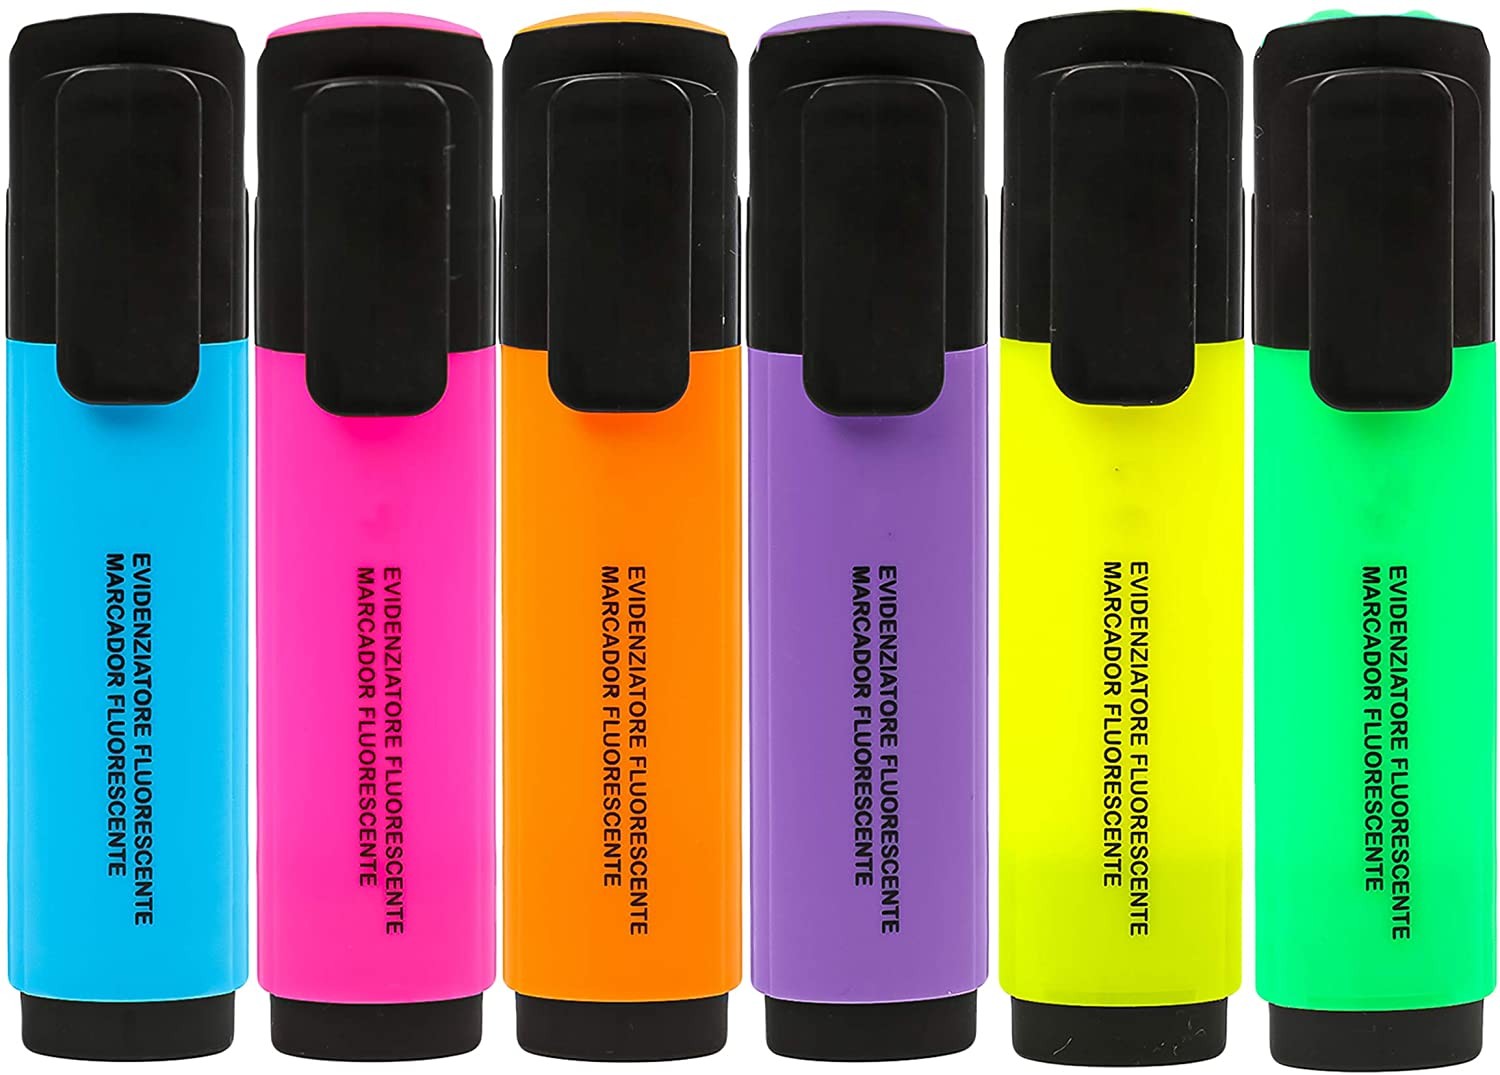 6 Subrayadores Color Fluorescente Marcadores Fluorescentes Multicolor Punta  Biselada